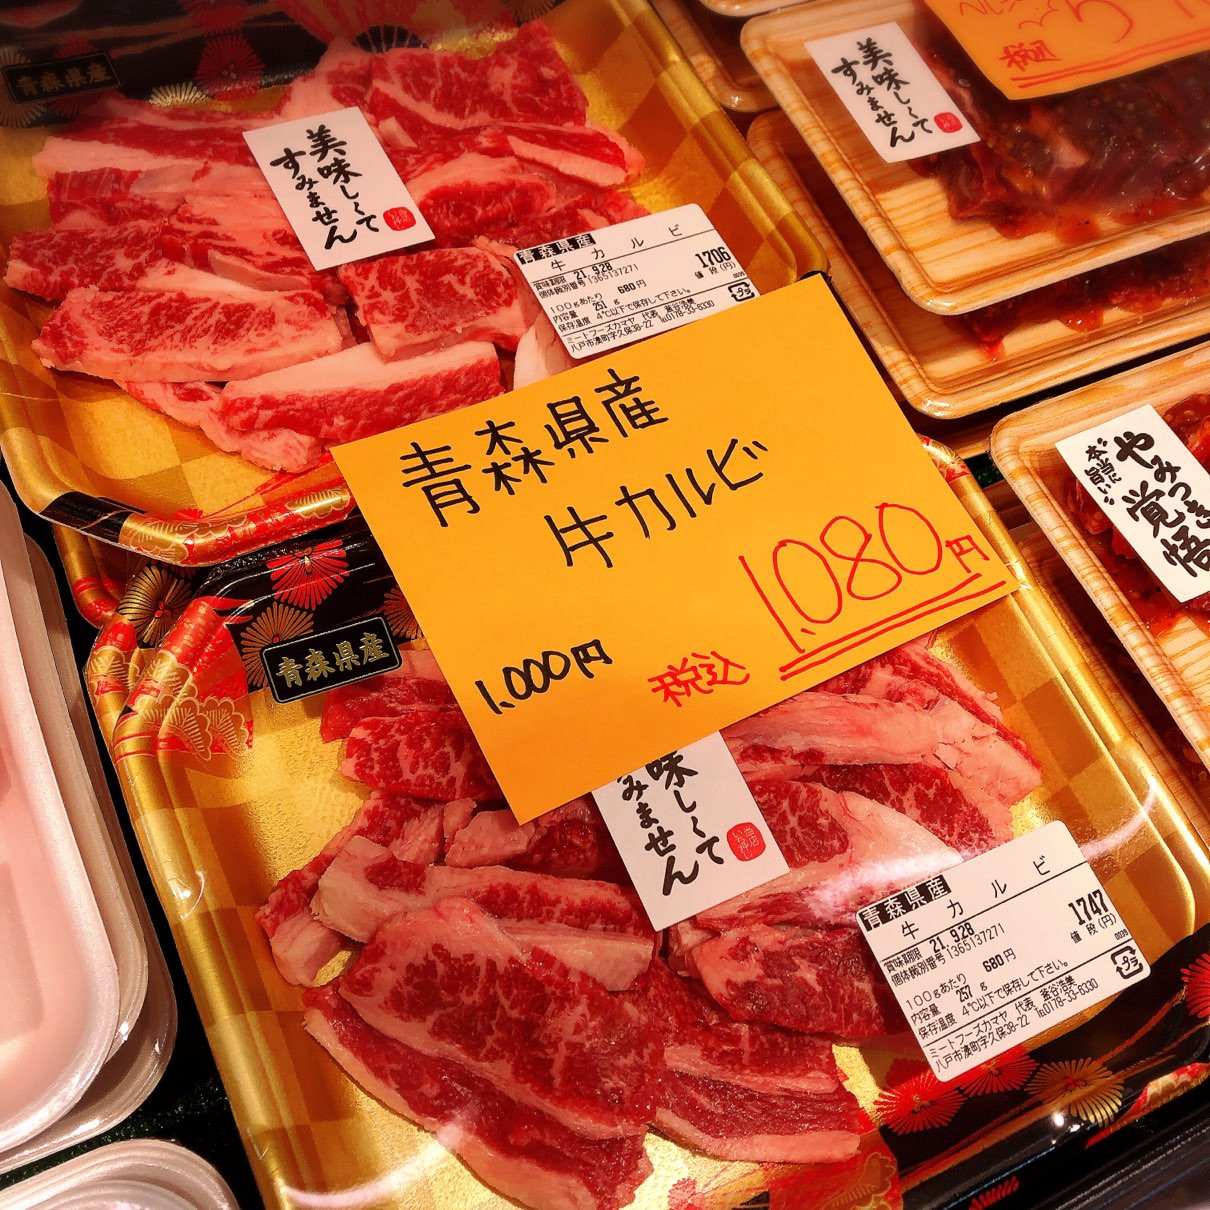 本日は青森県産牛カルビがお買得です。